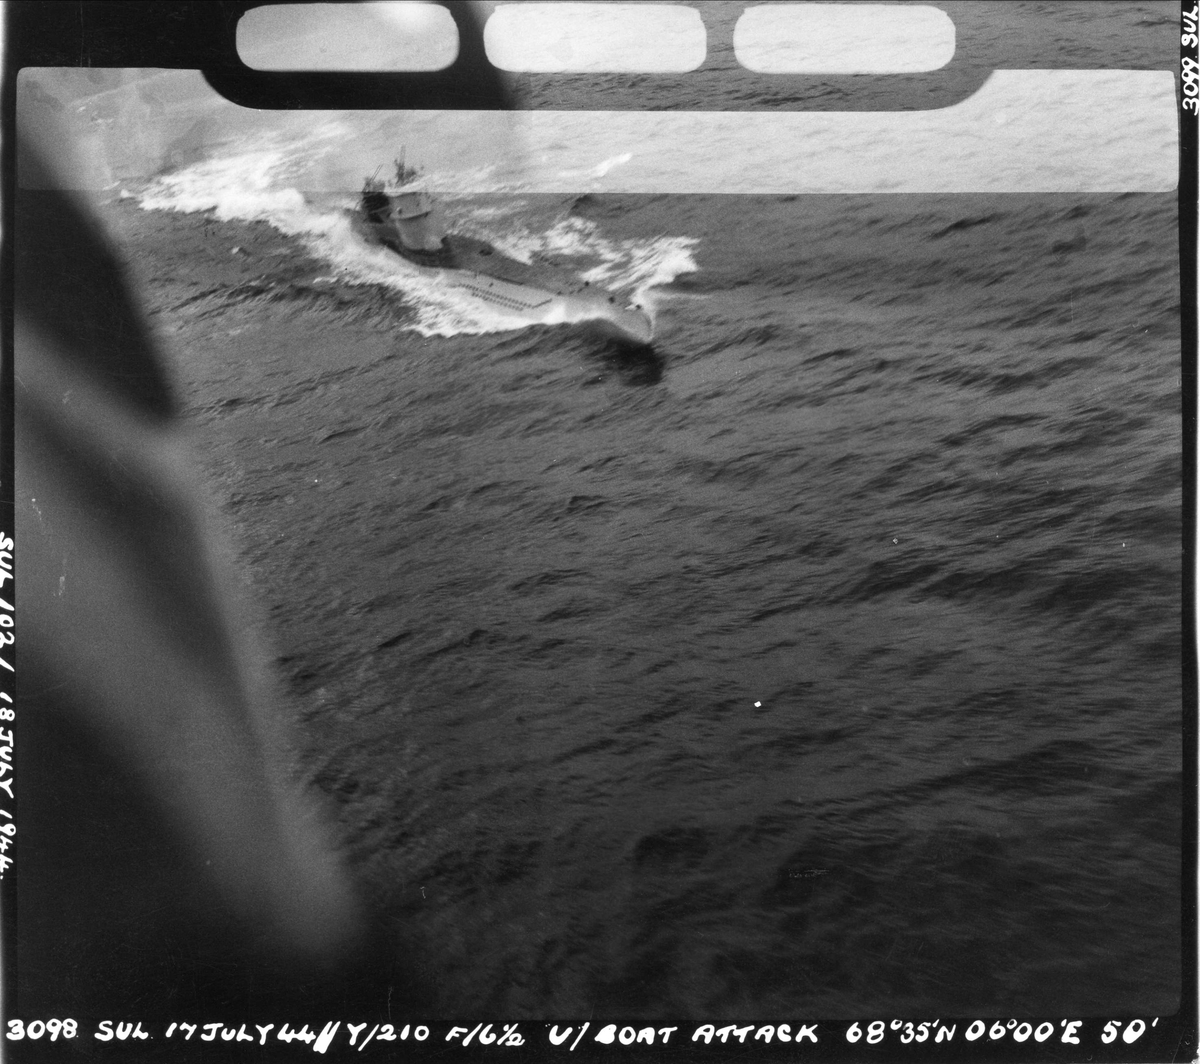 Flyangrep på tysk ubåt, 17. juli 1944.